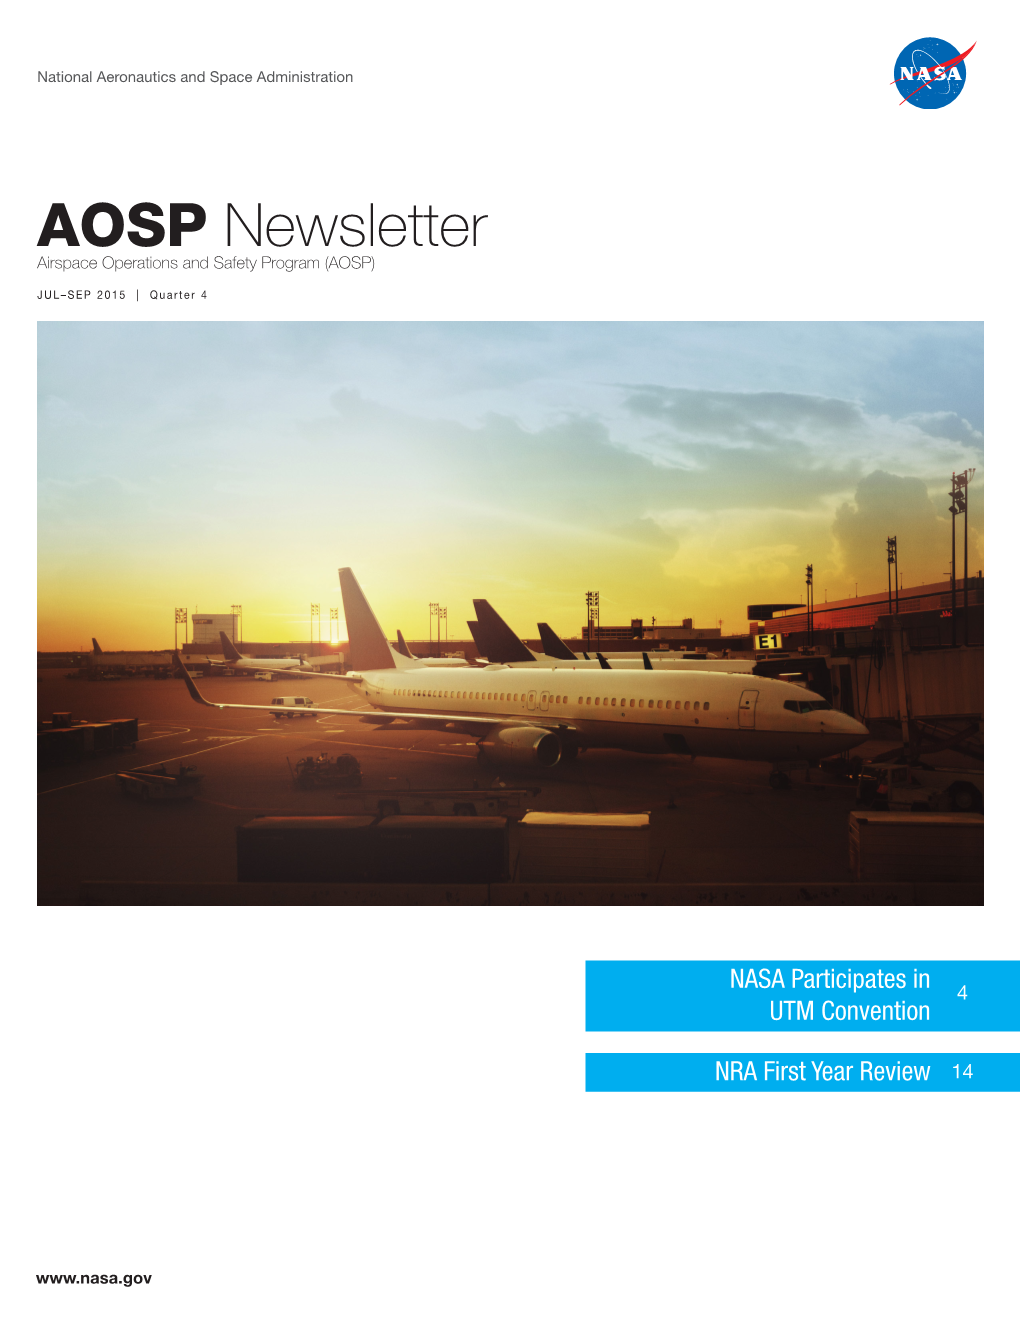 (AOSP) Newsletter, Q4, Jul-Sep 2015